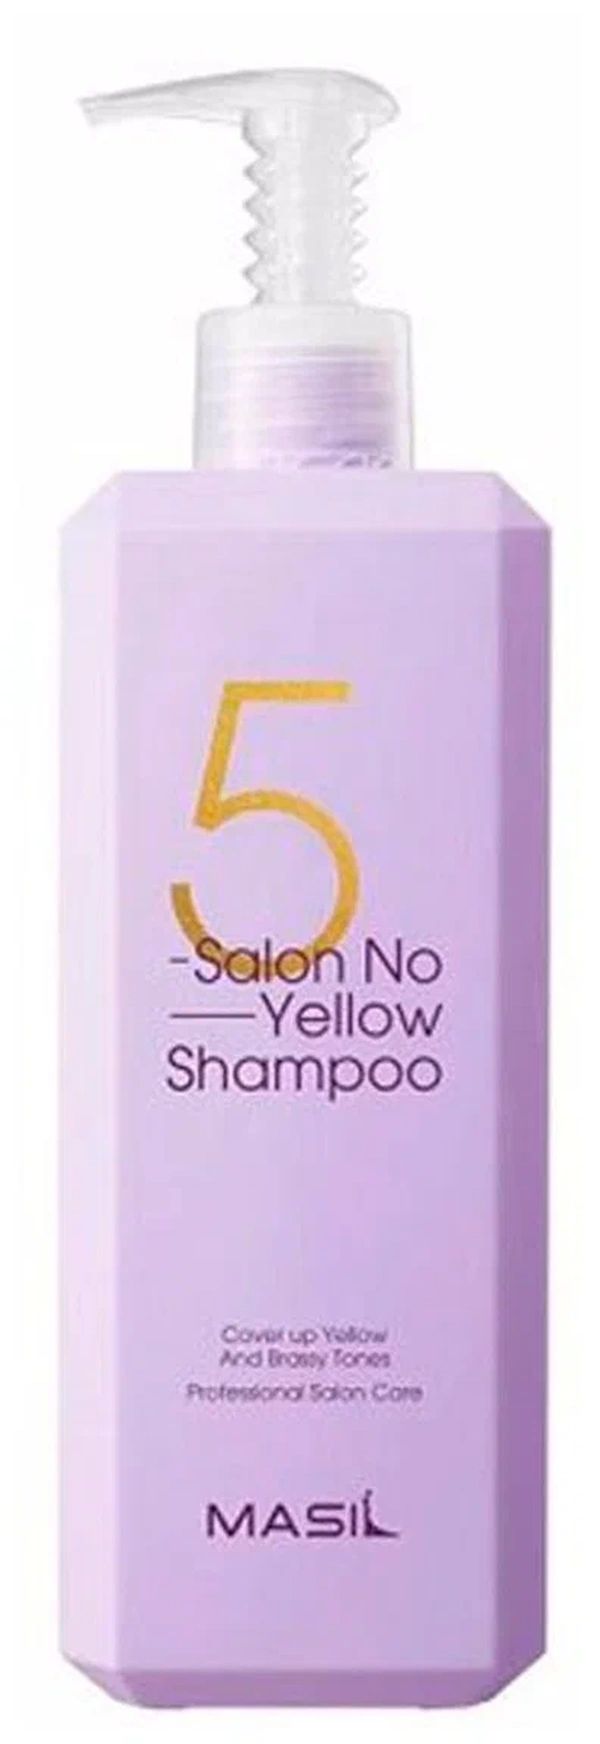 Тонирующий шампунь для осветленных волос MASIL 5 Salon No Yellow Shampoo 500 мл расчёска для волос masil